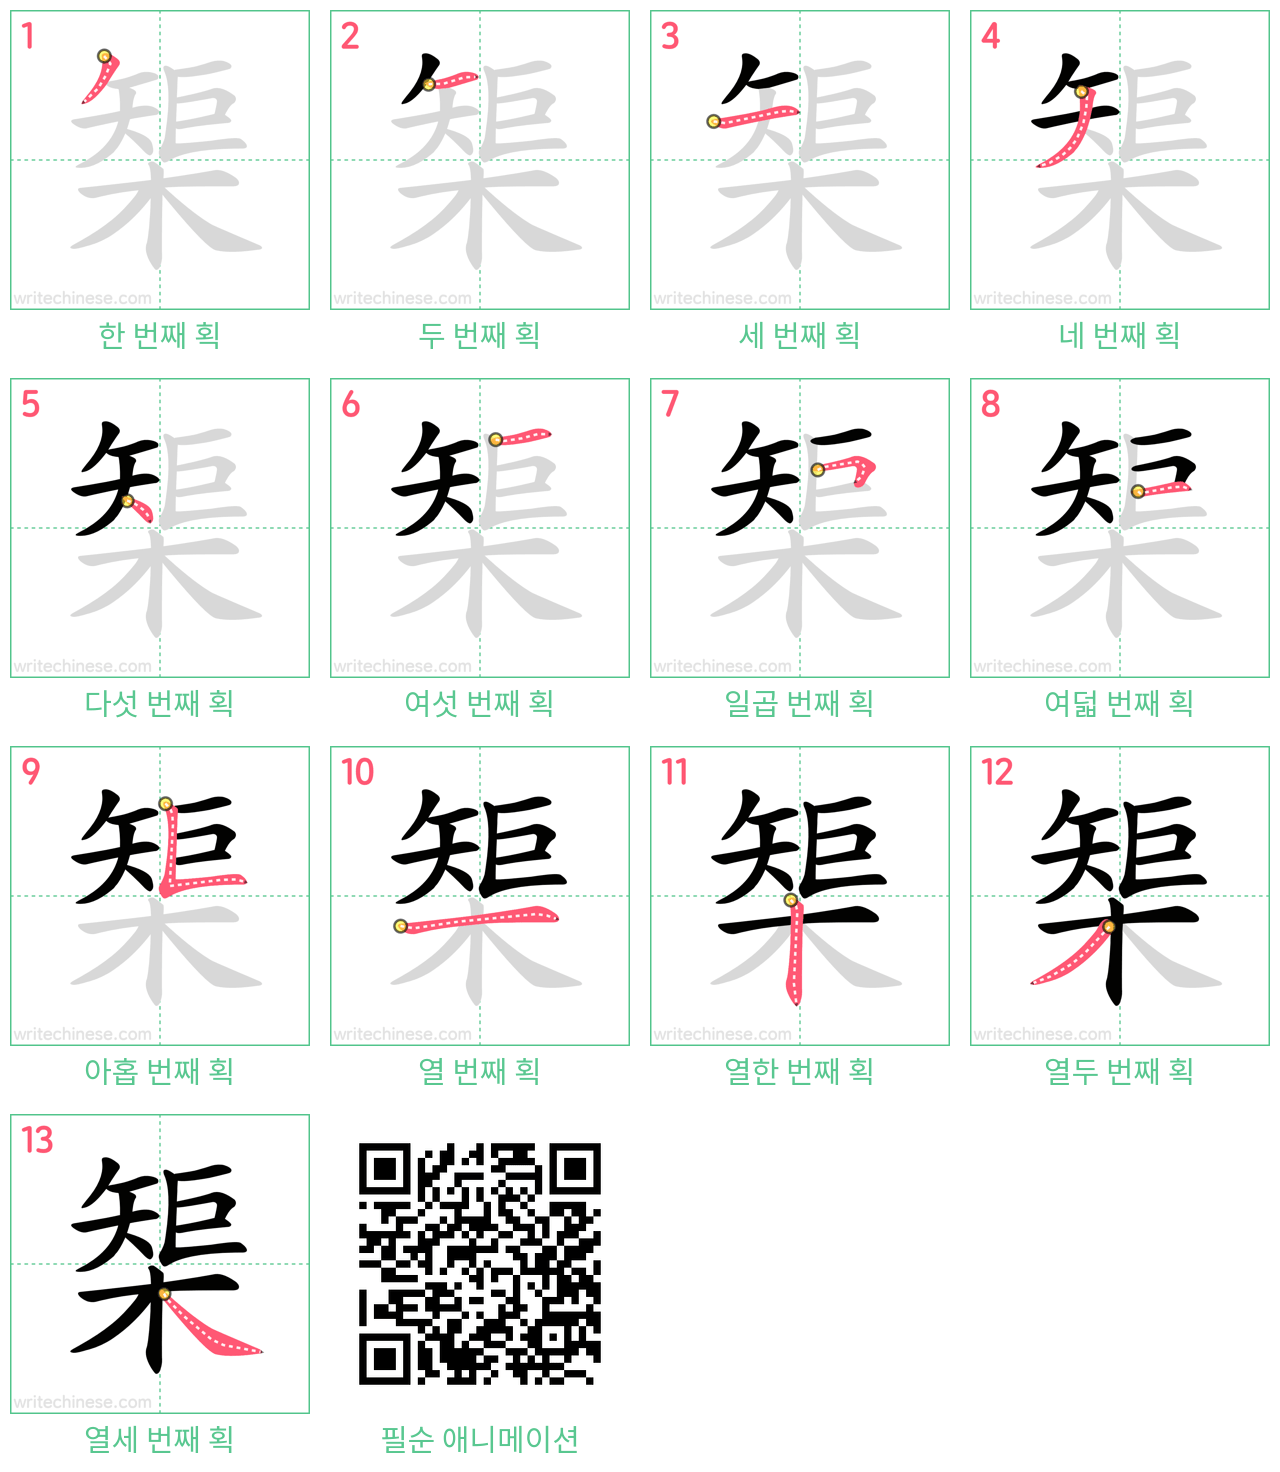 榘 step-by-step stroke order diagrams